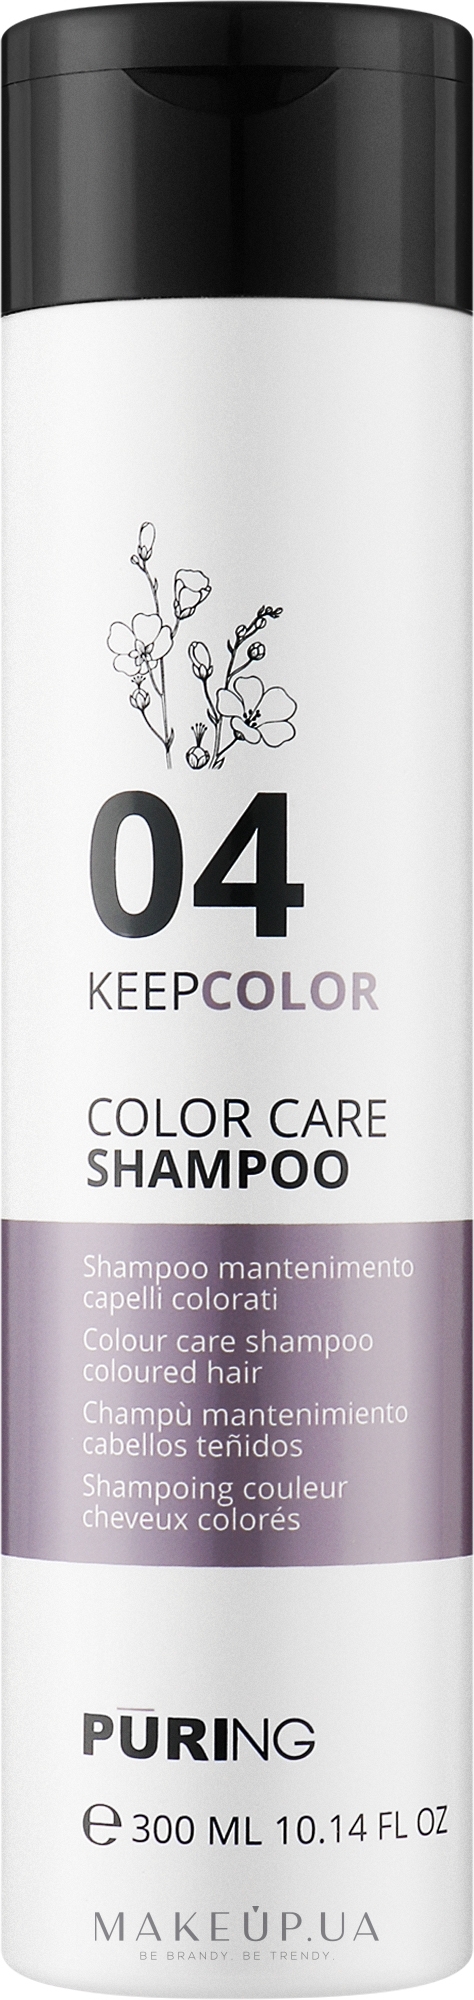 Шампунь для поддержания цвета окрашенных волос - Puring Keepcolor Color Care Shampoo — фото 1000ml